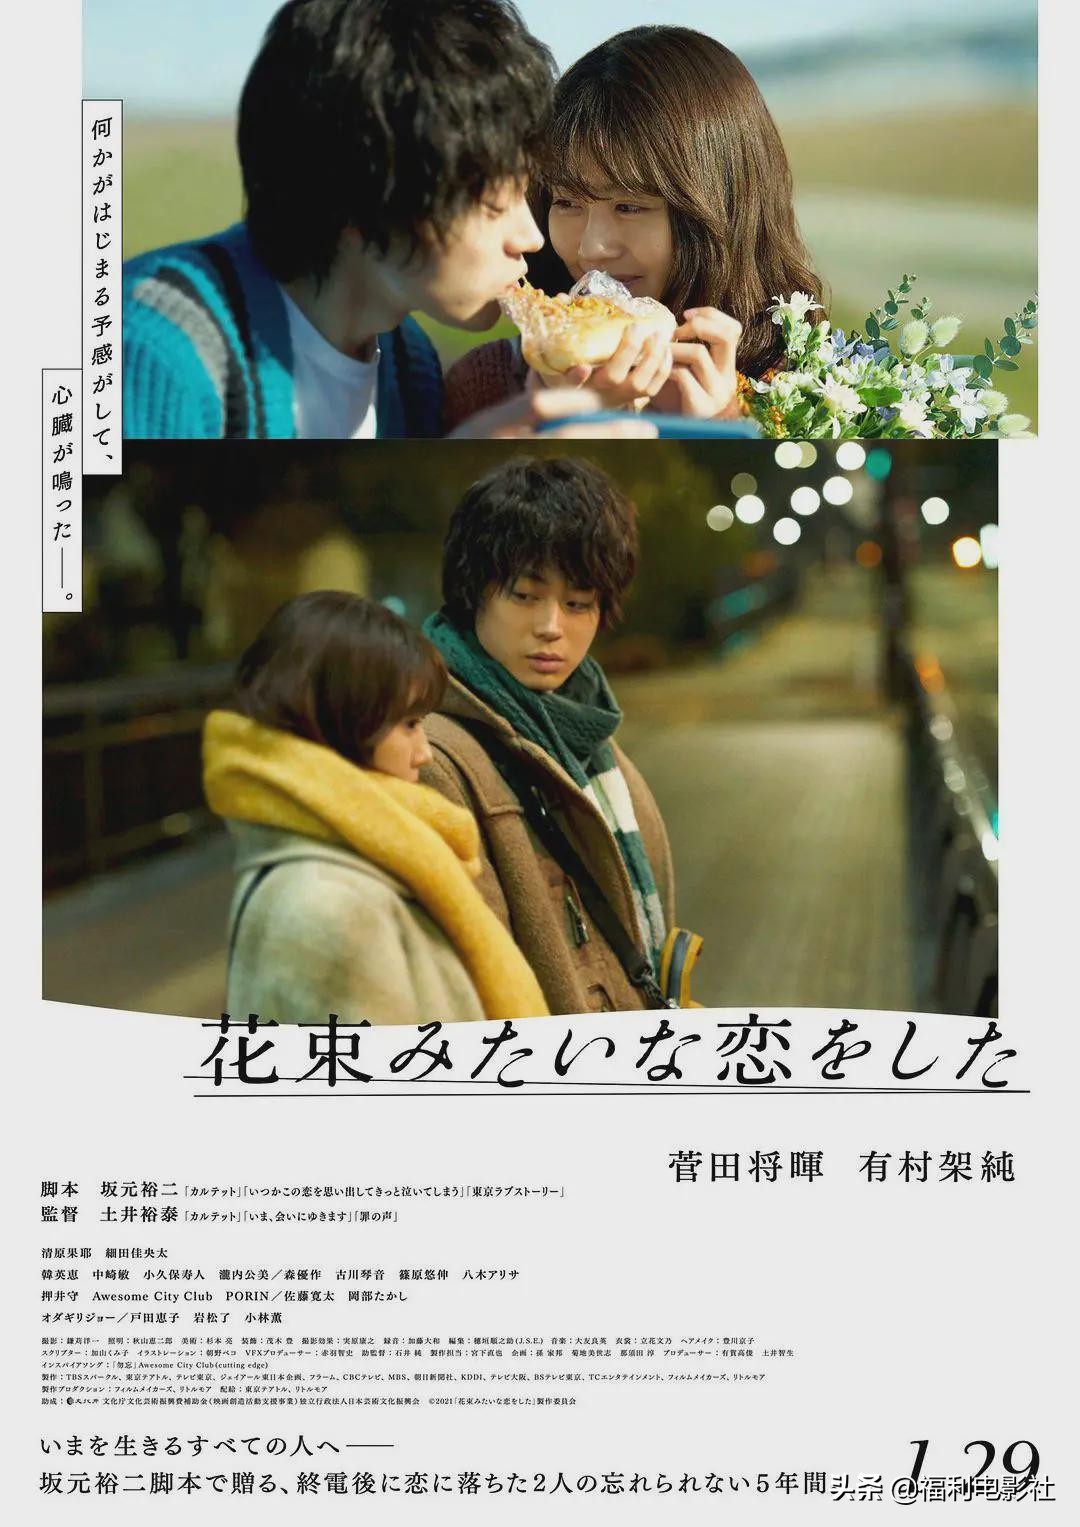 豆瓣8.7高分，文艺青年成年后的爱情，都被这部日本电影说透了